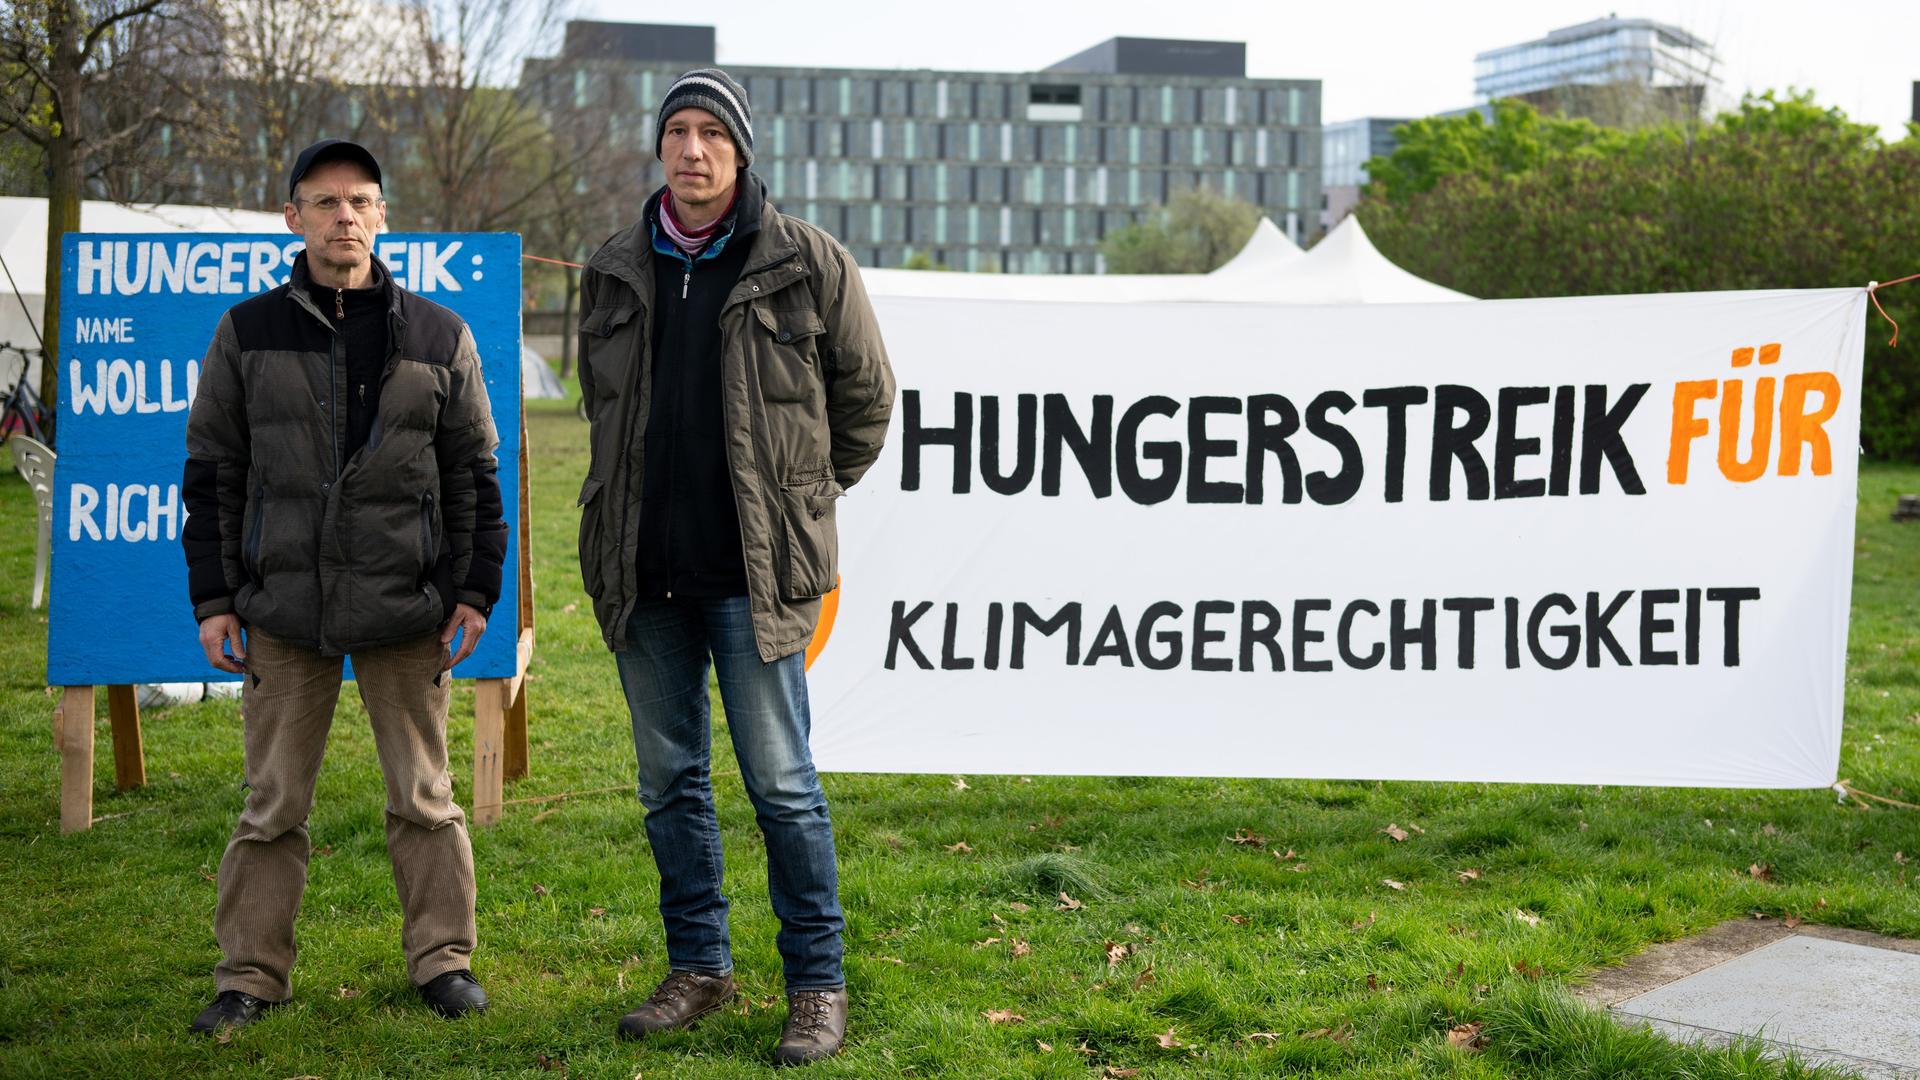 Zwei Personen stehen neben einem Banner, auf dem "Hungerstreik für Klimagerechtigkeit" steht. 